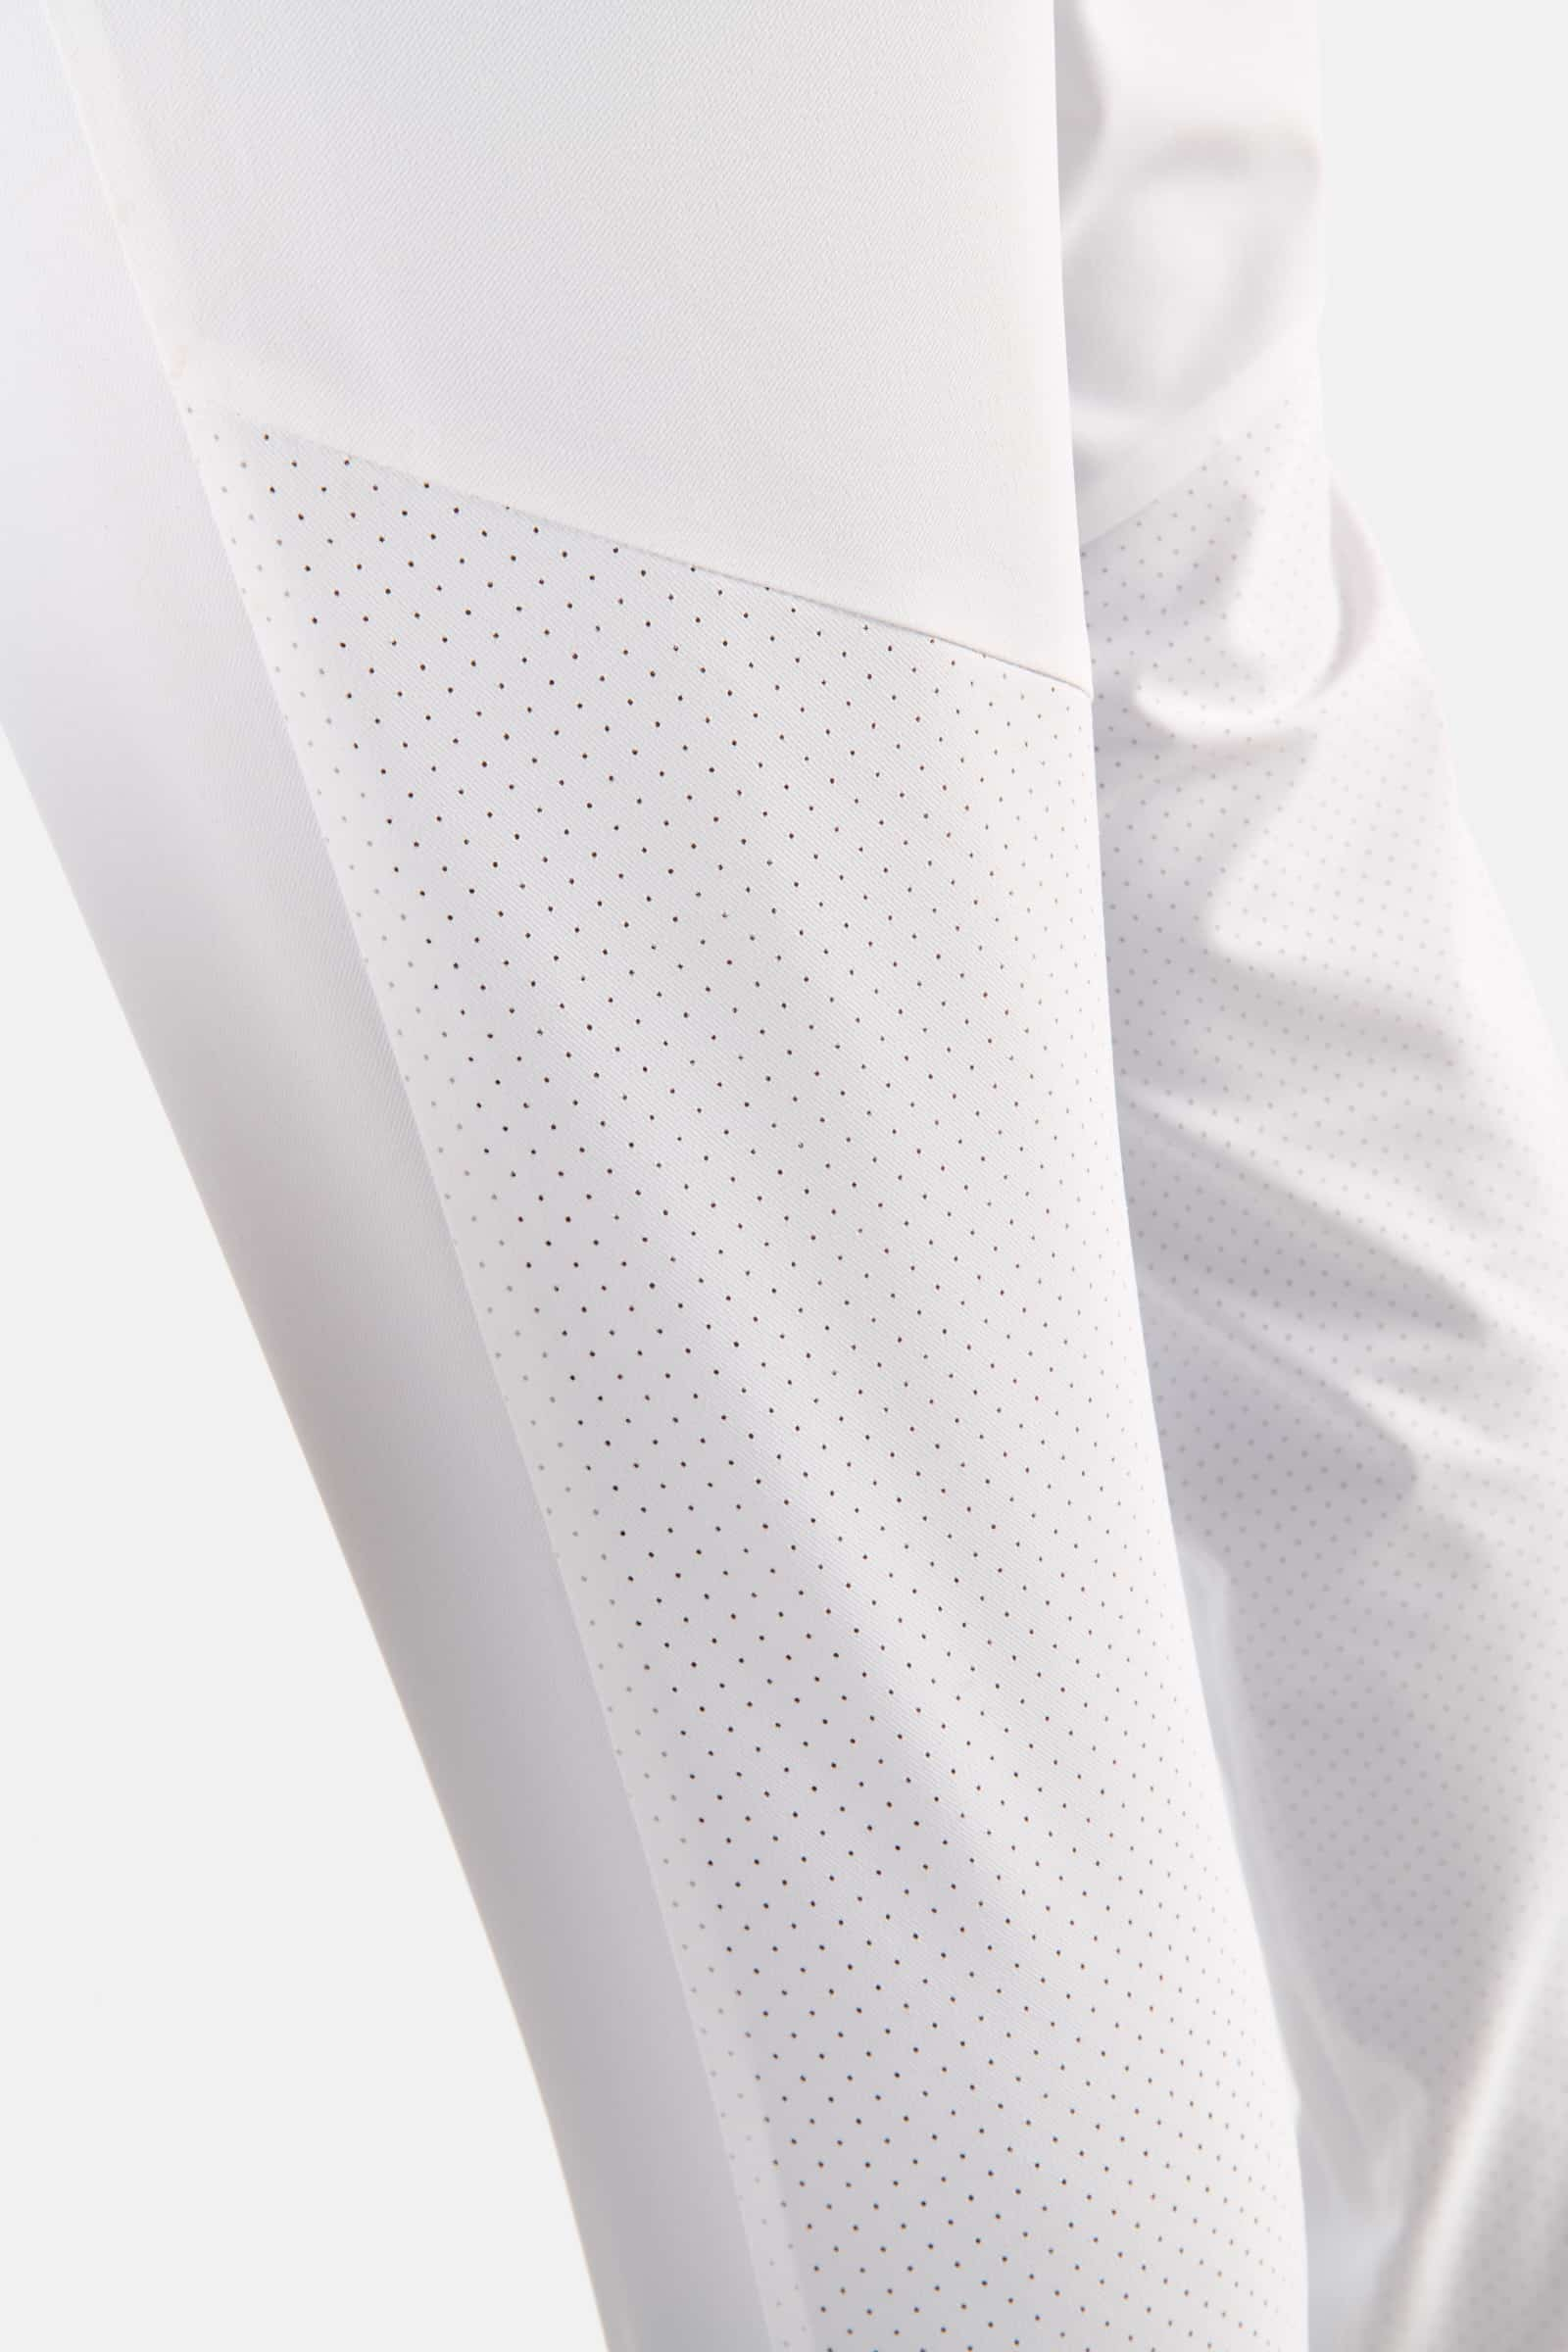 TECH PANTS - Outlet Hydrogen - Luxury Sportwear